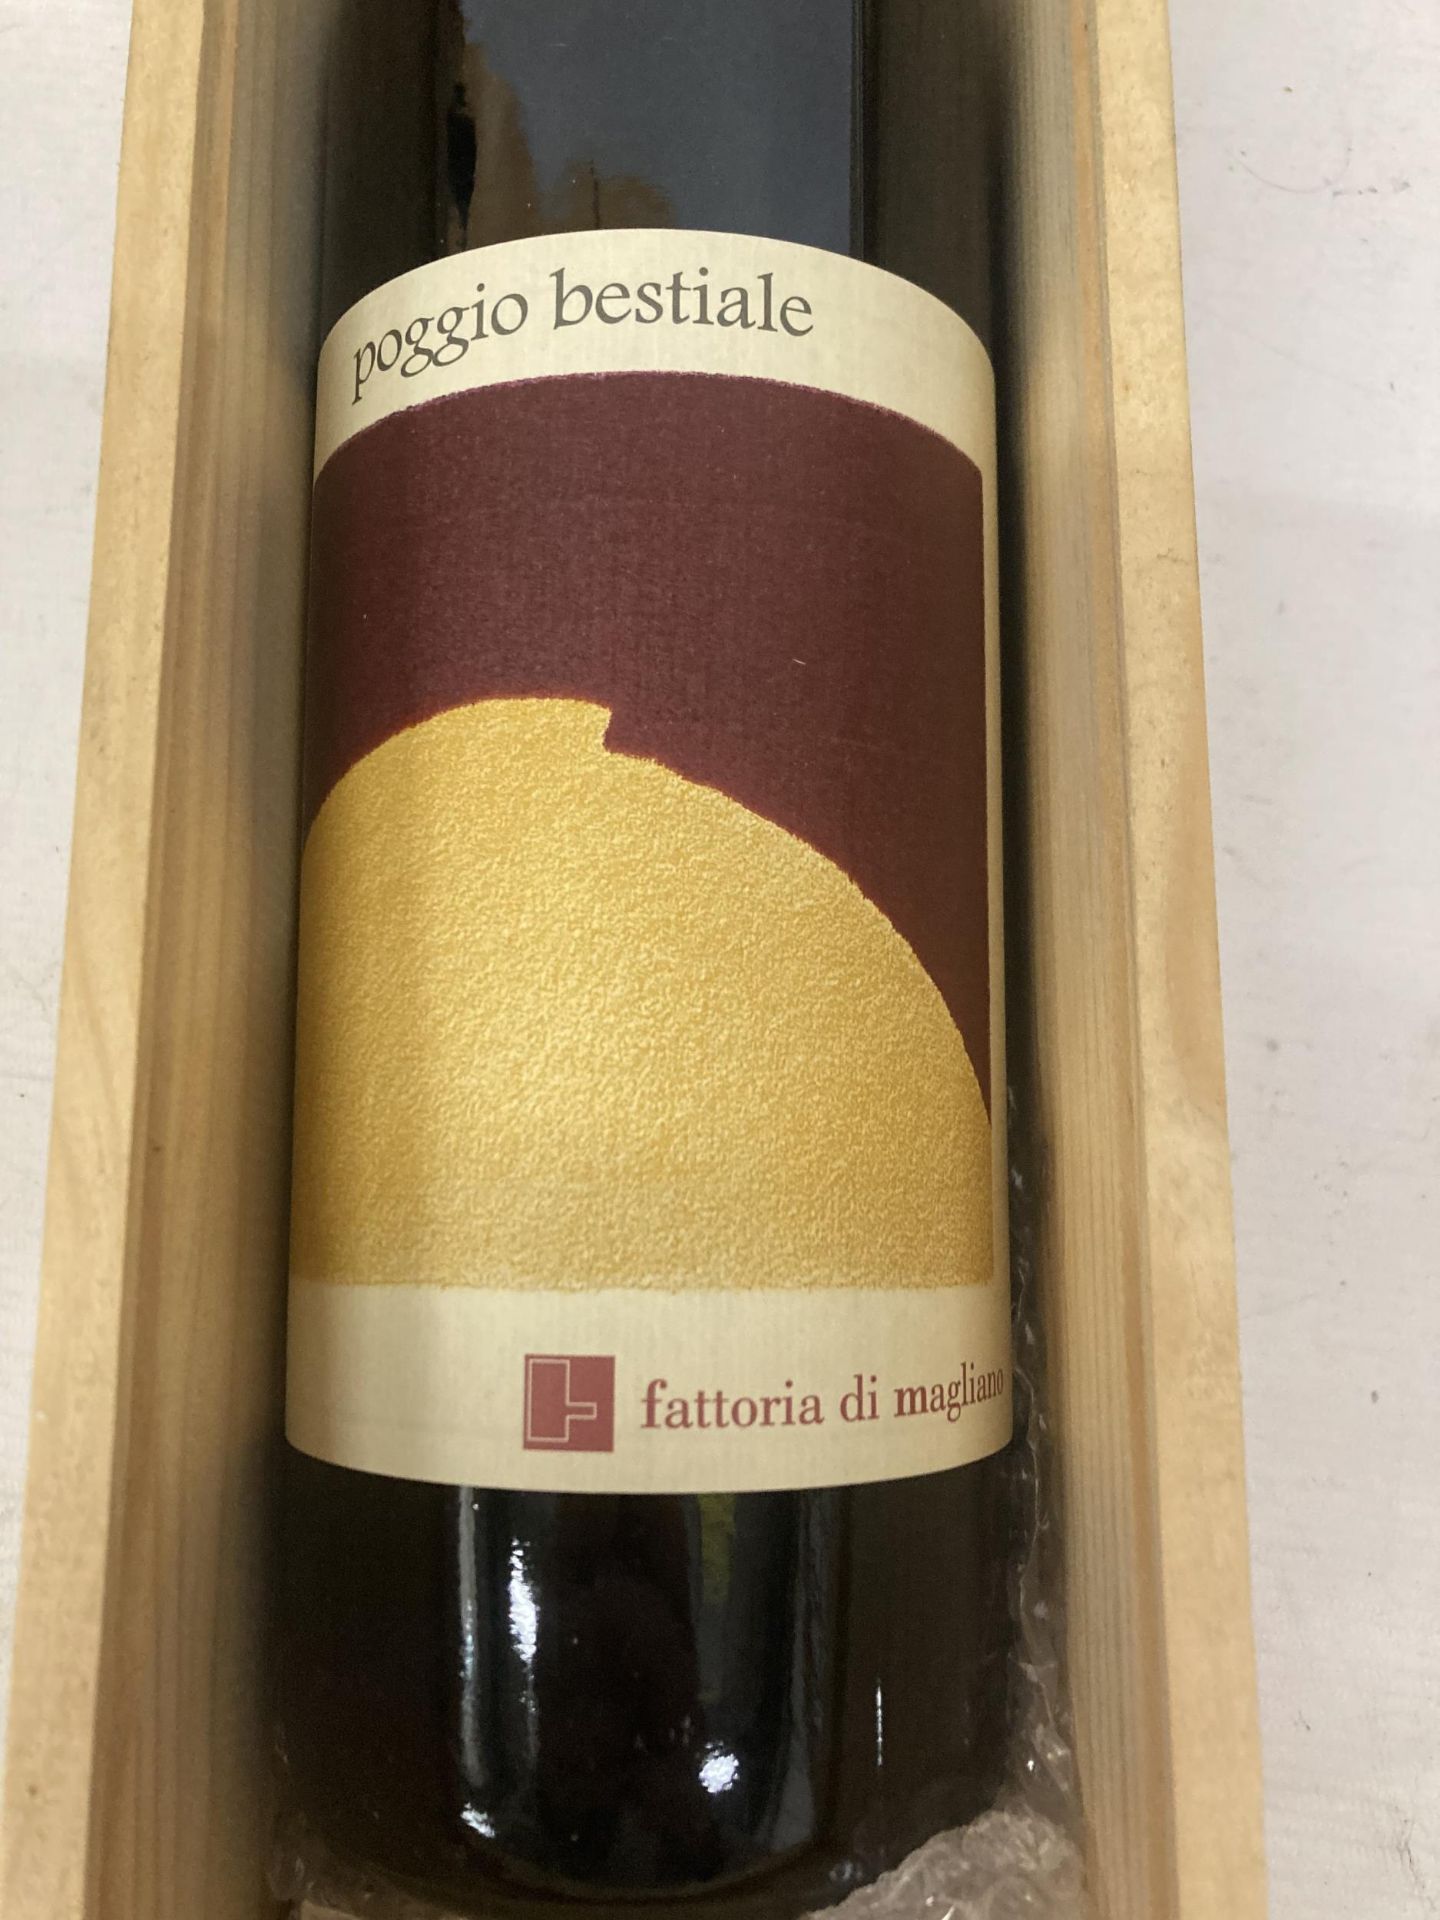 A 1500ML BOTTLE OF POGGIO BESTIALE FATTORIA DI MAGLIANO WINE INA WOODEN PRESENTATION BOX - Image 2 of 2